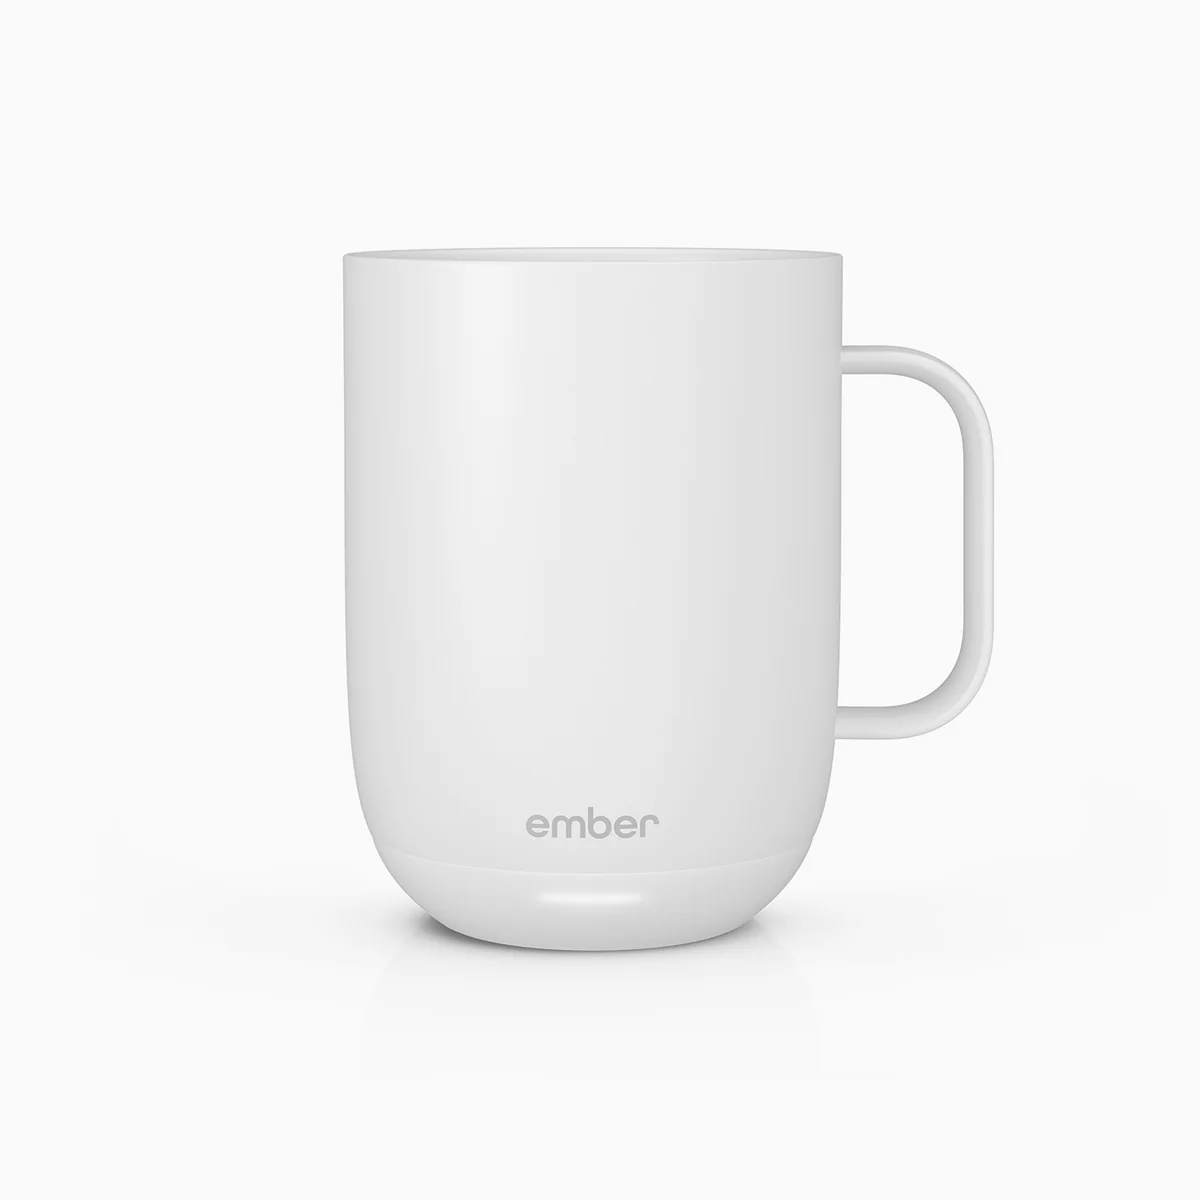 10oz Ember Mug - Includes Laser Engraving